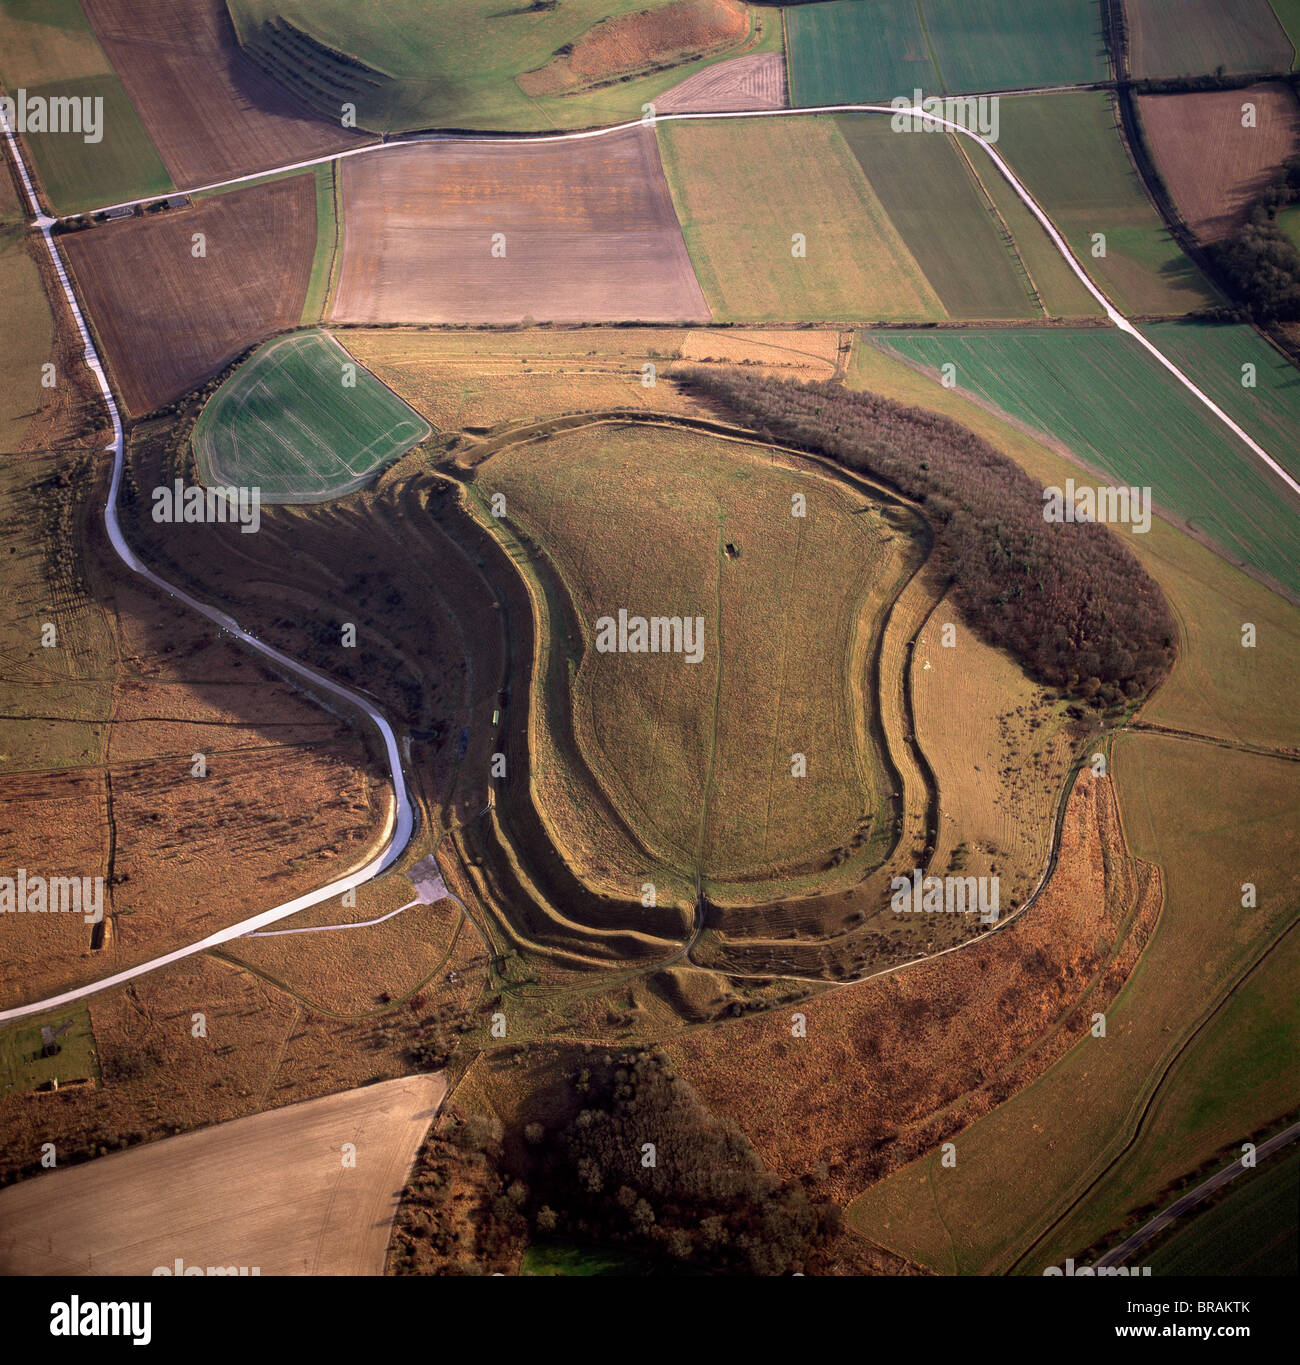 Immagine aerea di Battlesbury Camp, un'età del ferro Hill fort, Warminster, Wiltshire, Inghilterra, Regno Unito, Europa Foto Stock